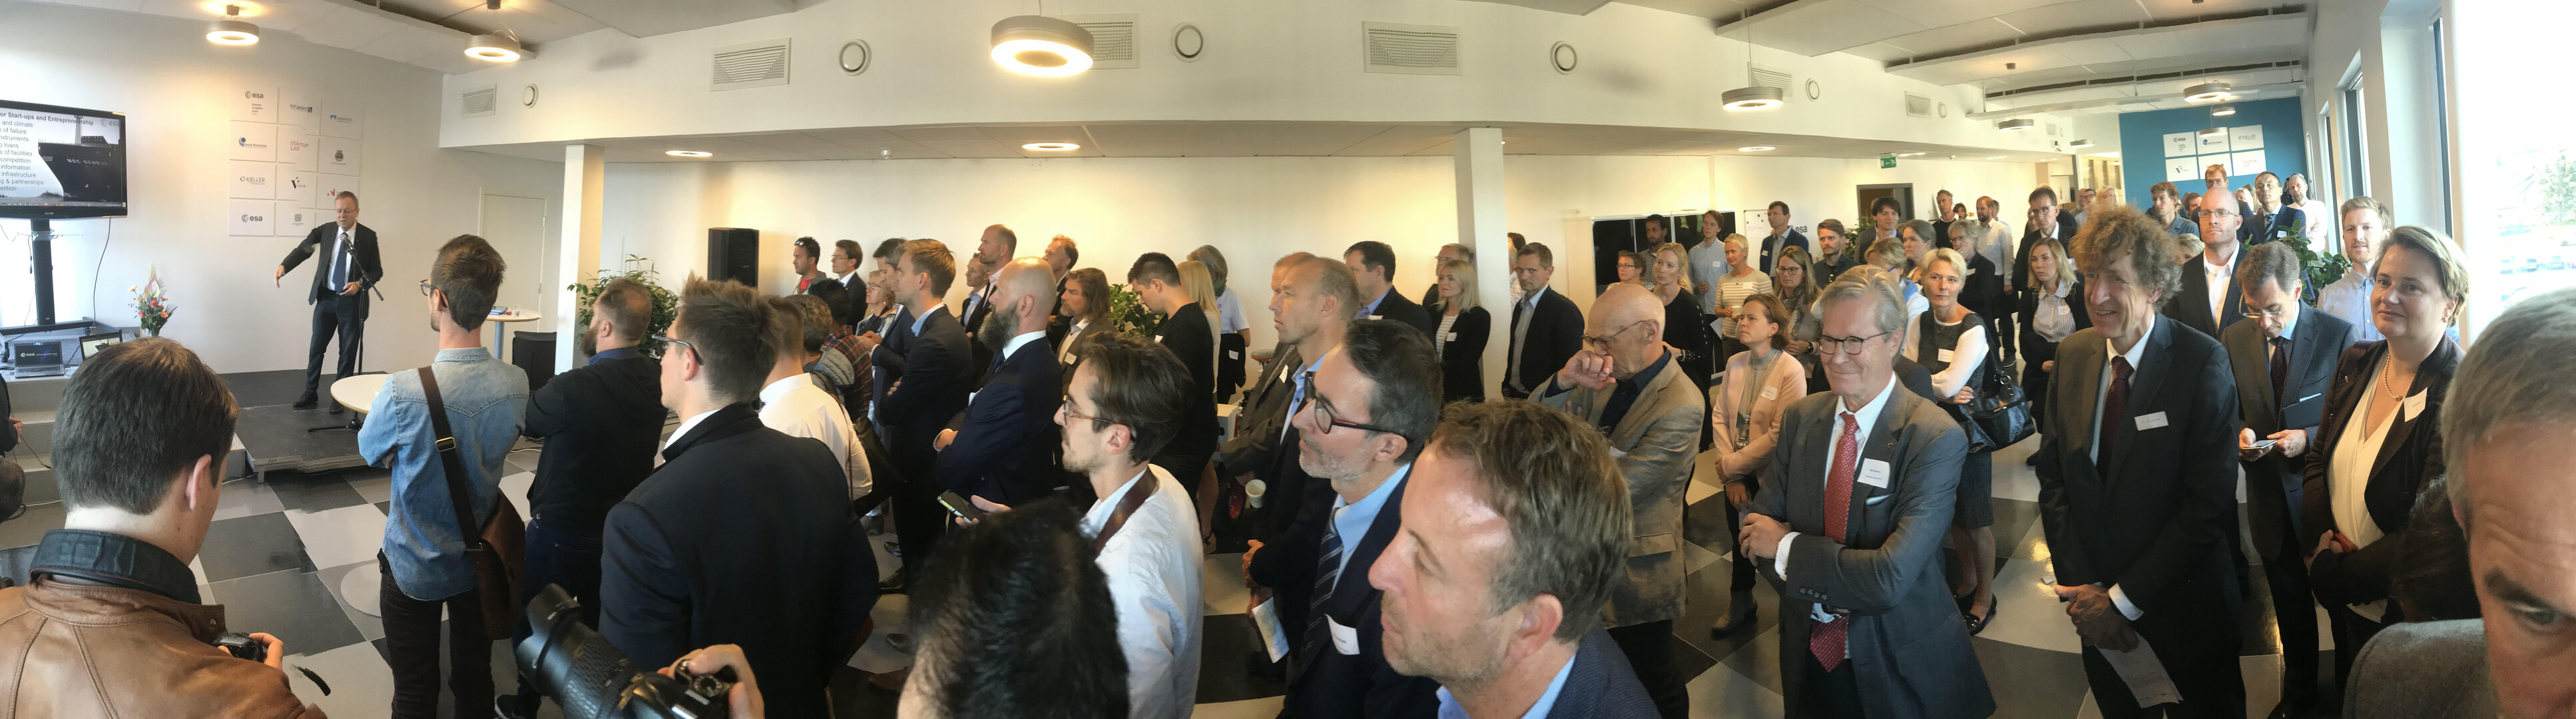 ESA BIC Norway opening 31 August 2018